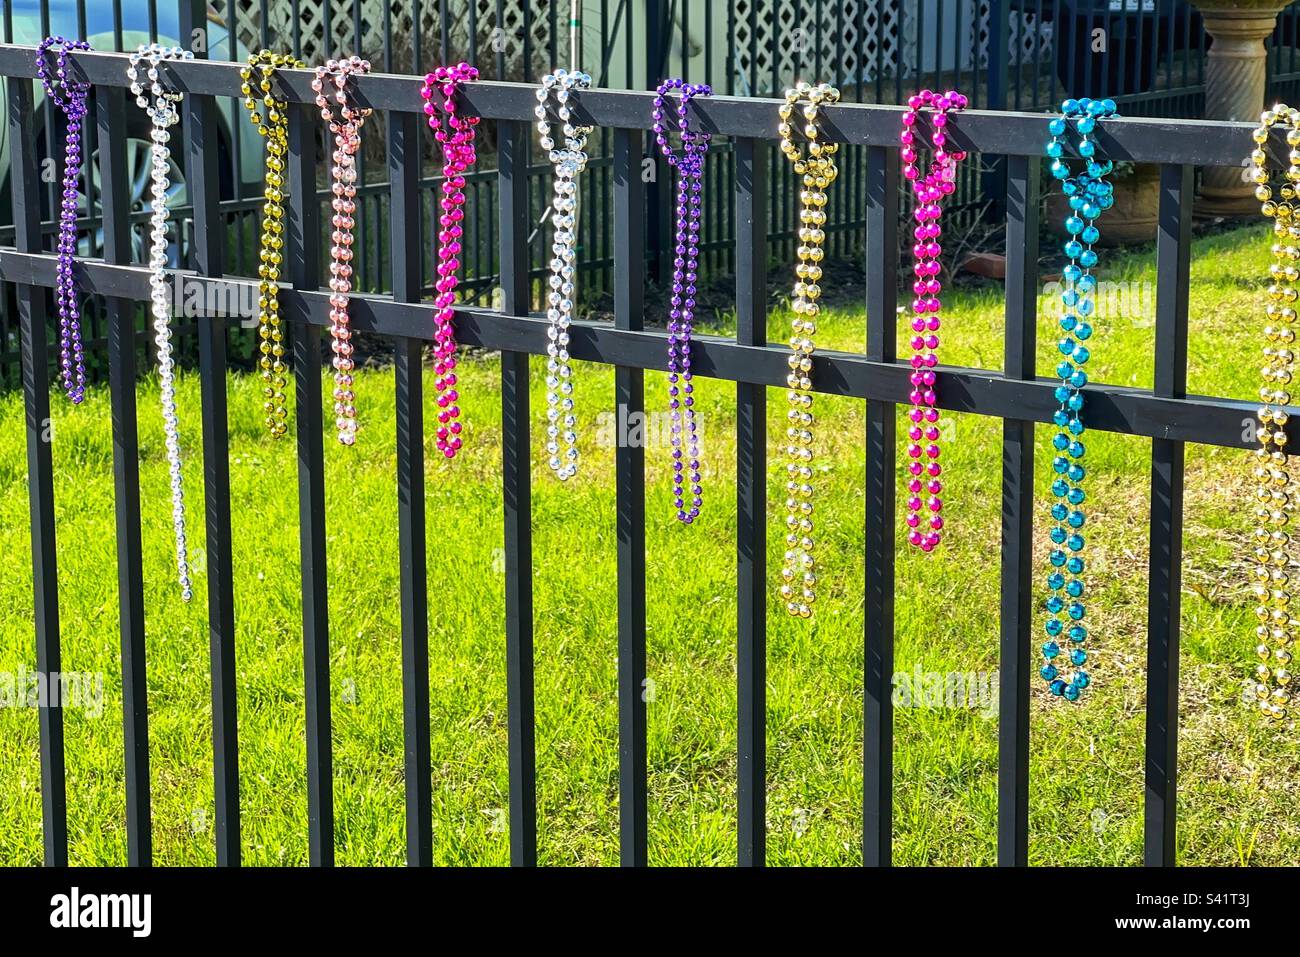 Jolies perles multicolores accrochées à une clôture de jardin pour célébrer un festival Mardi gras. Personne. Banque D'Images